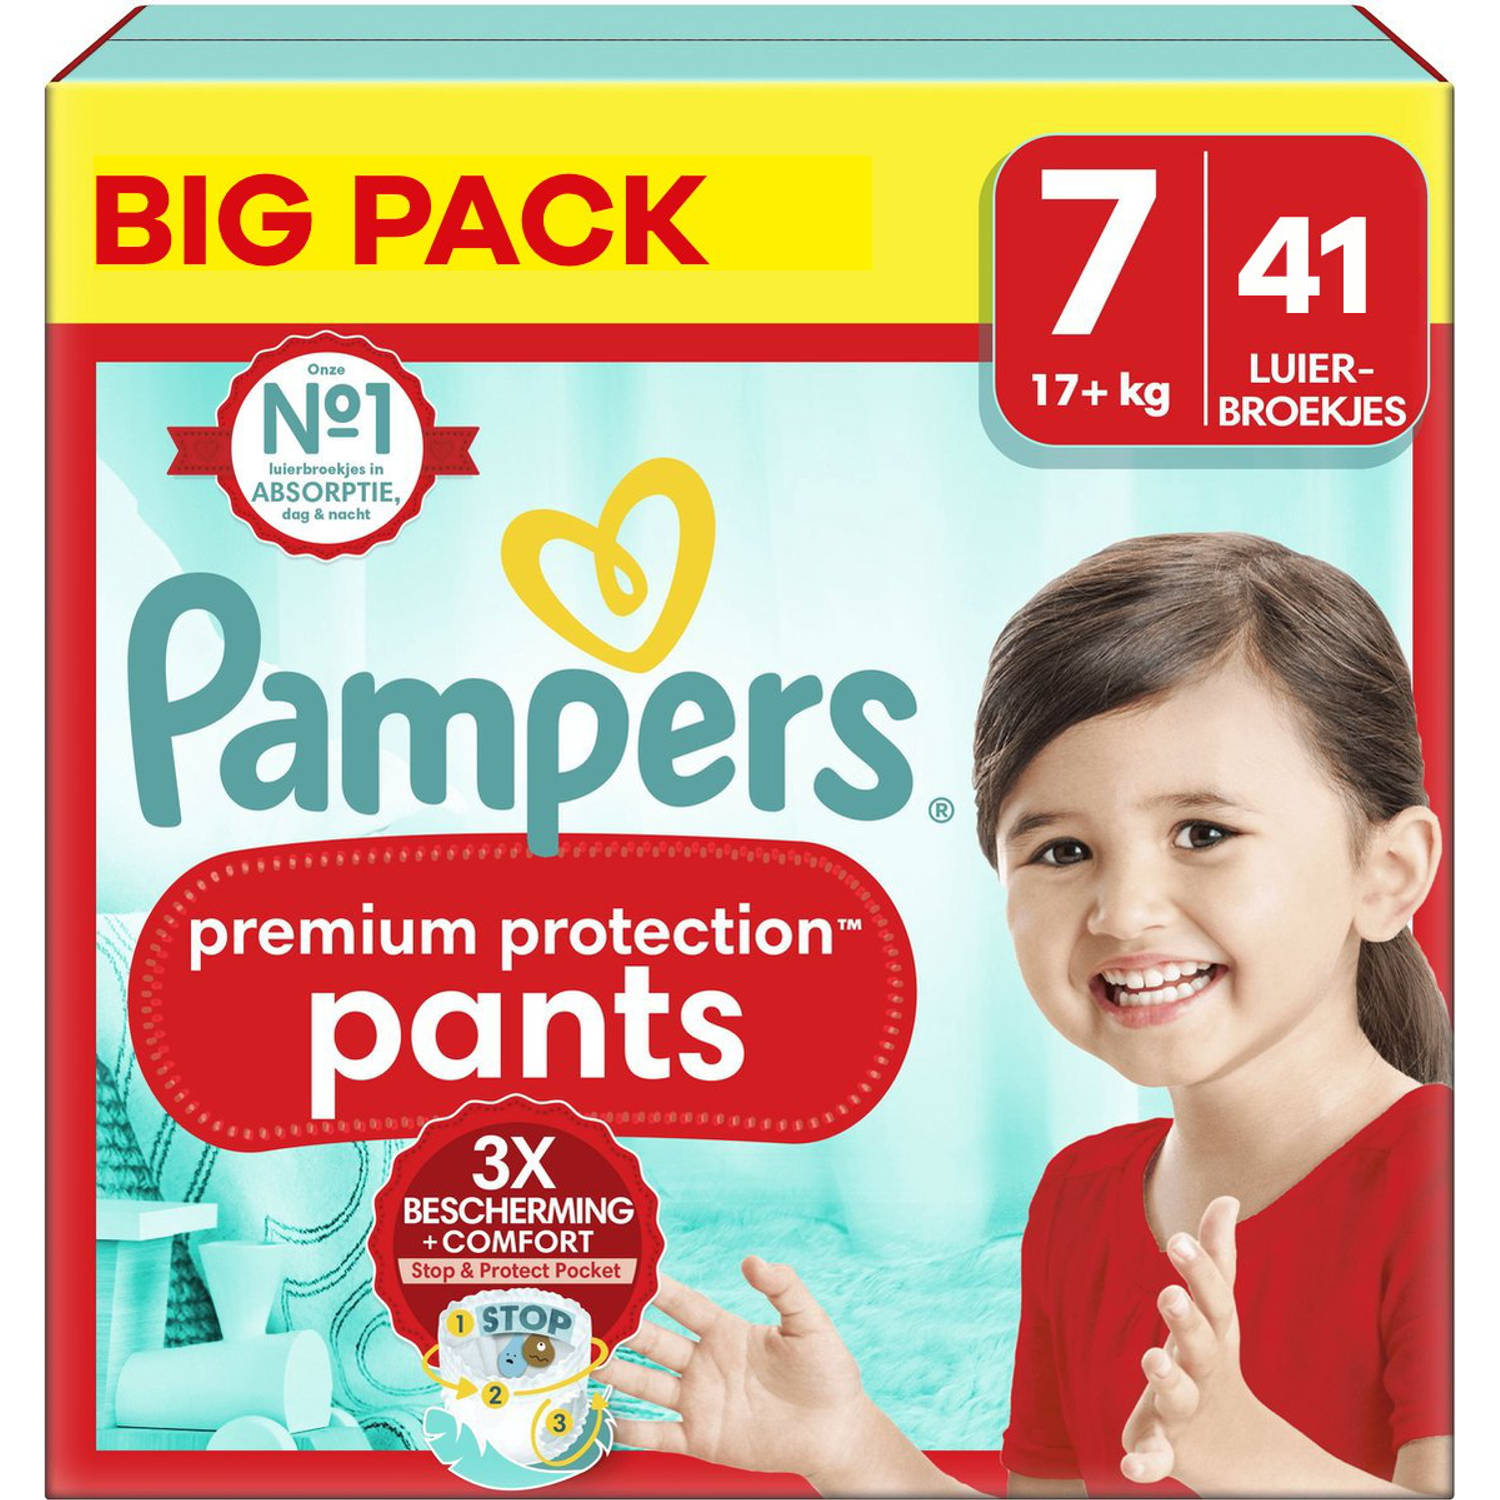 Pampers Premium Protection Pants Maat 7 Mega Pack 41 stuks 17+ KG